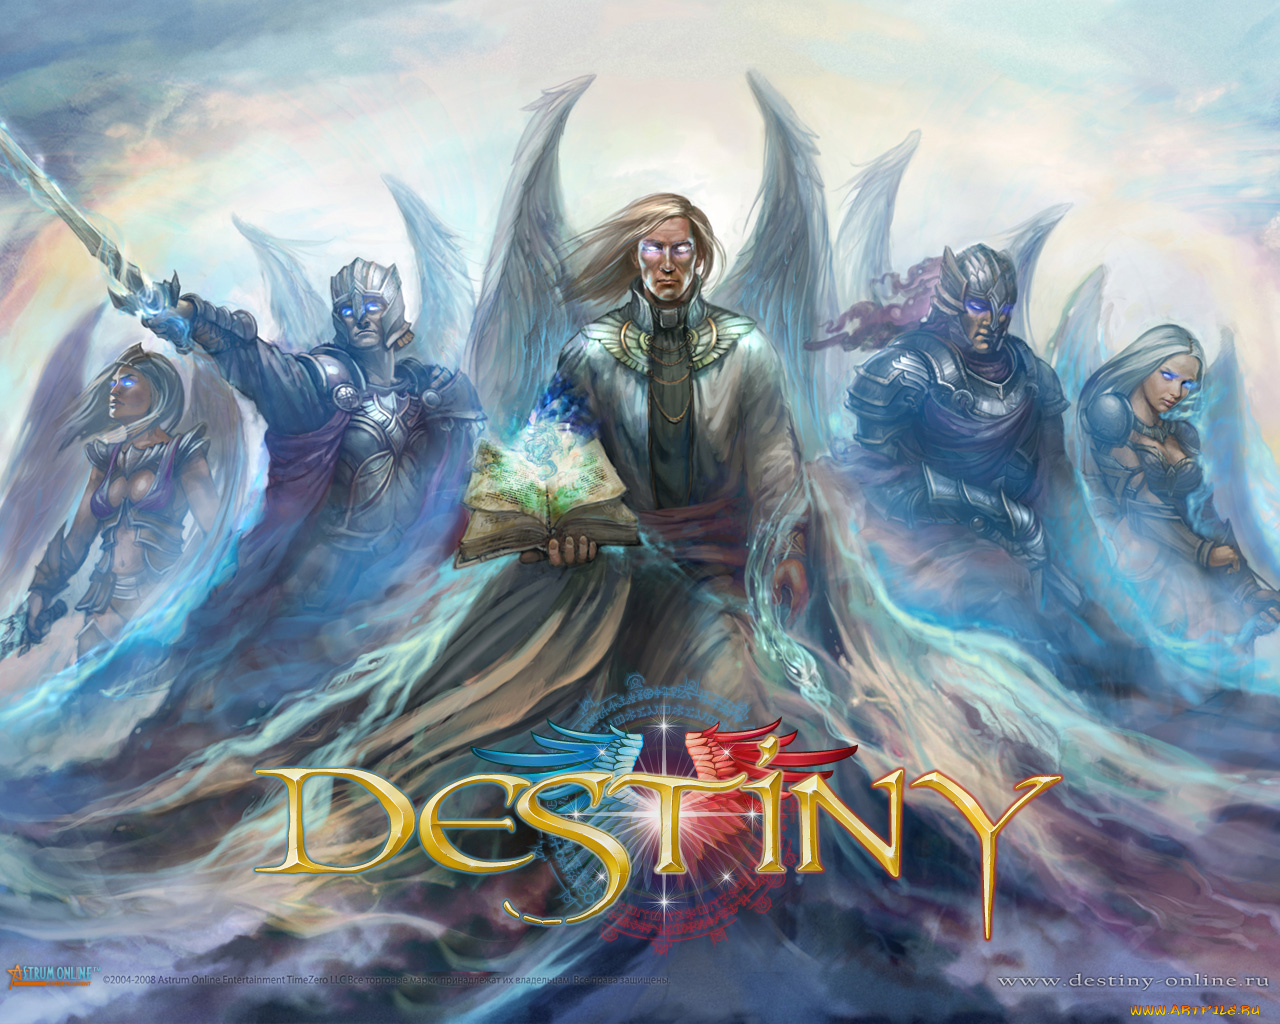 destiny, online, видео, игры